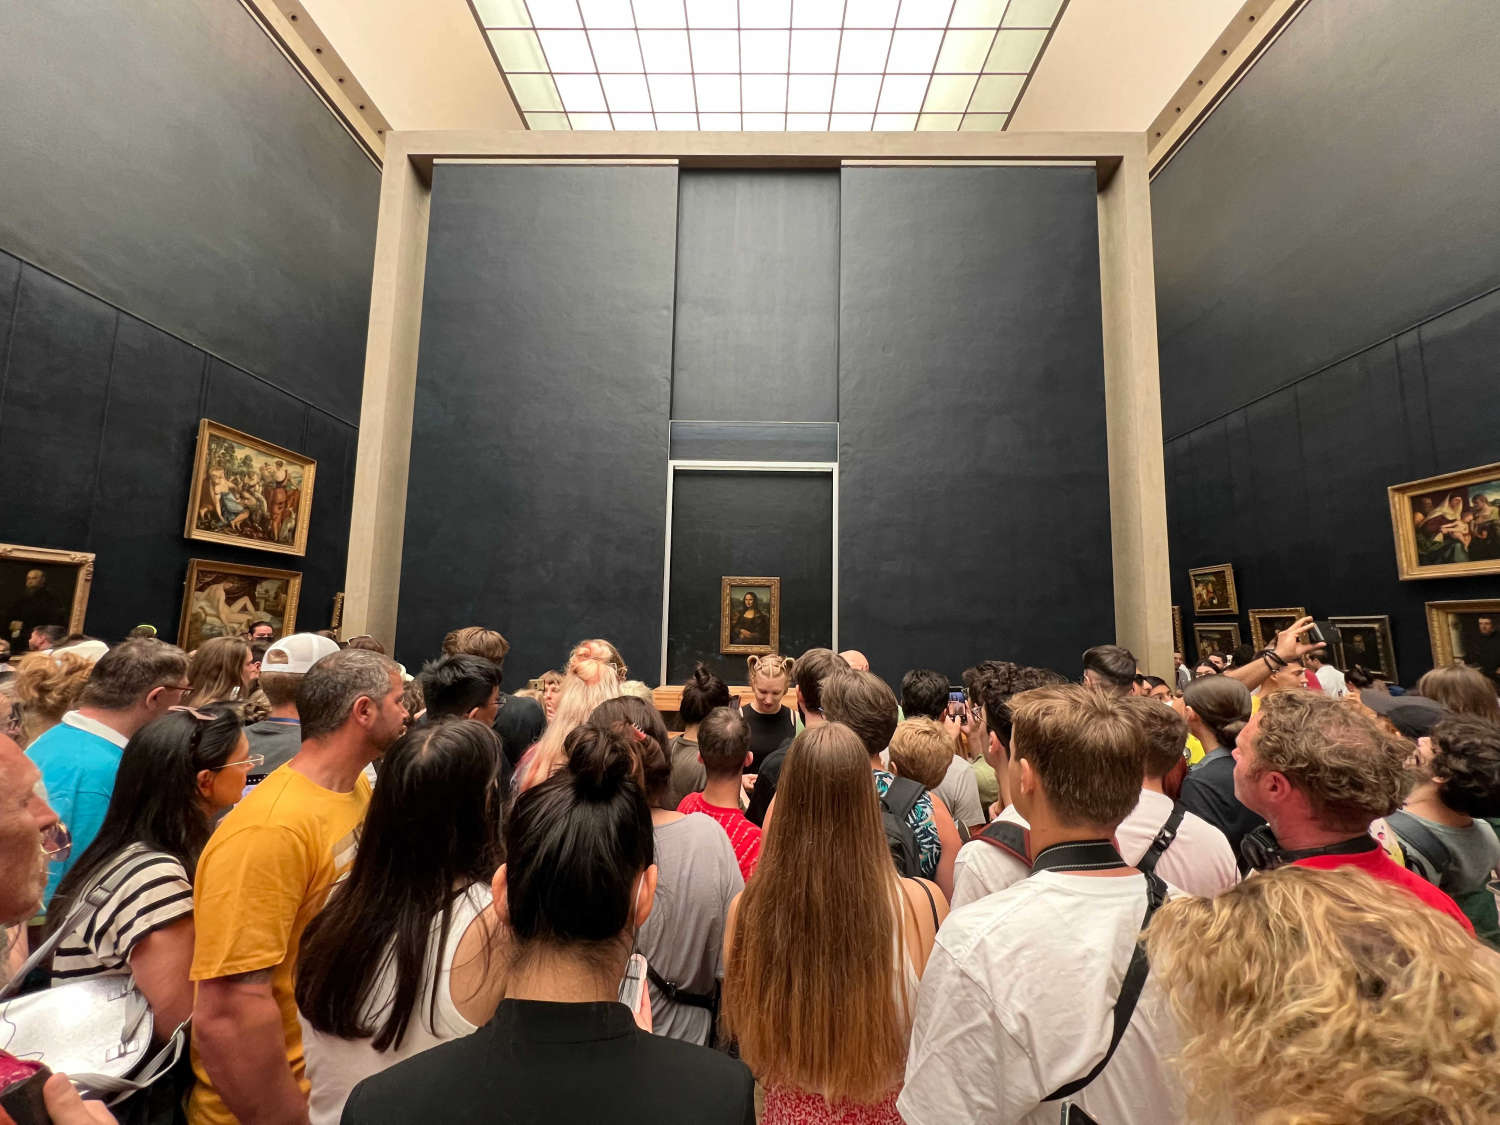 بازدید کنندگان در حال تماشای نقاشی مونالیزا